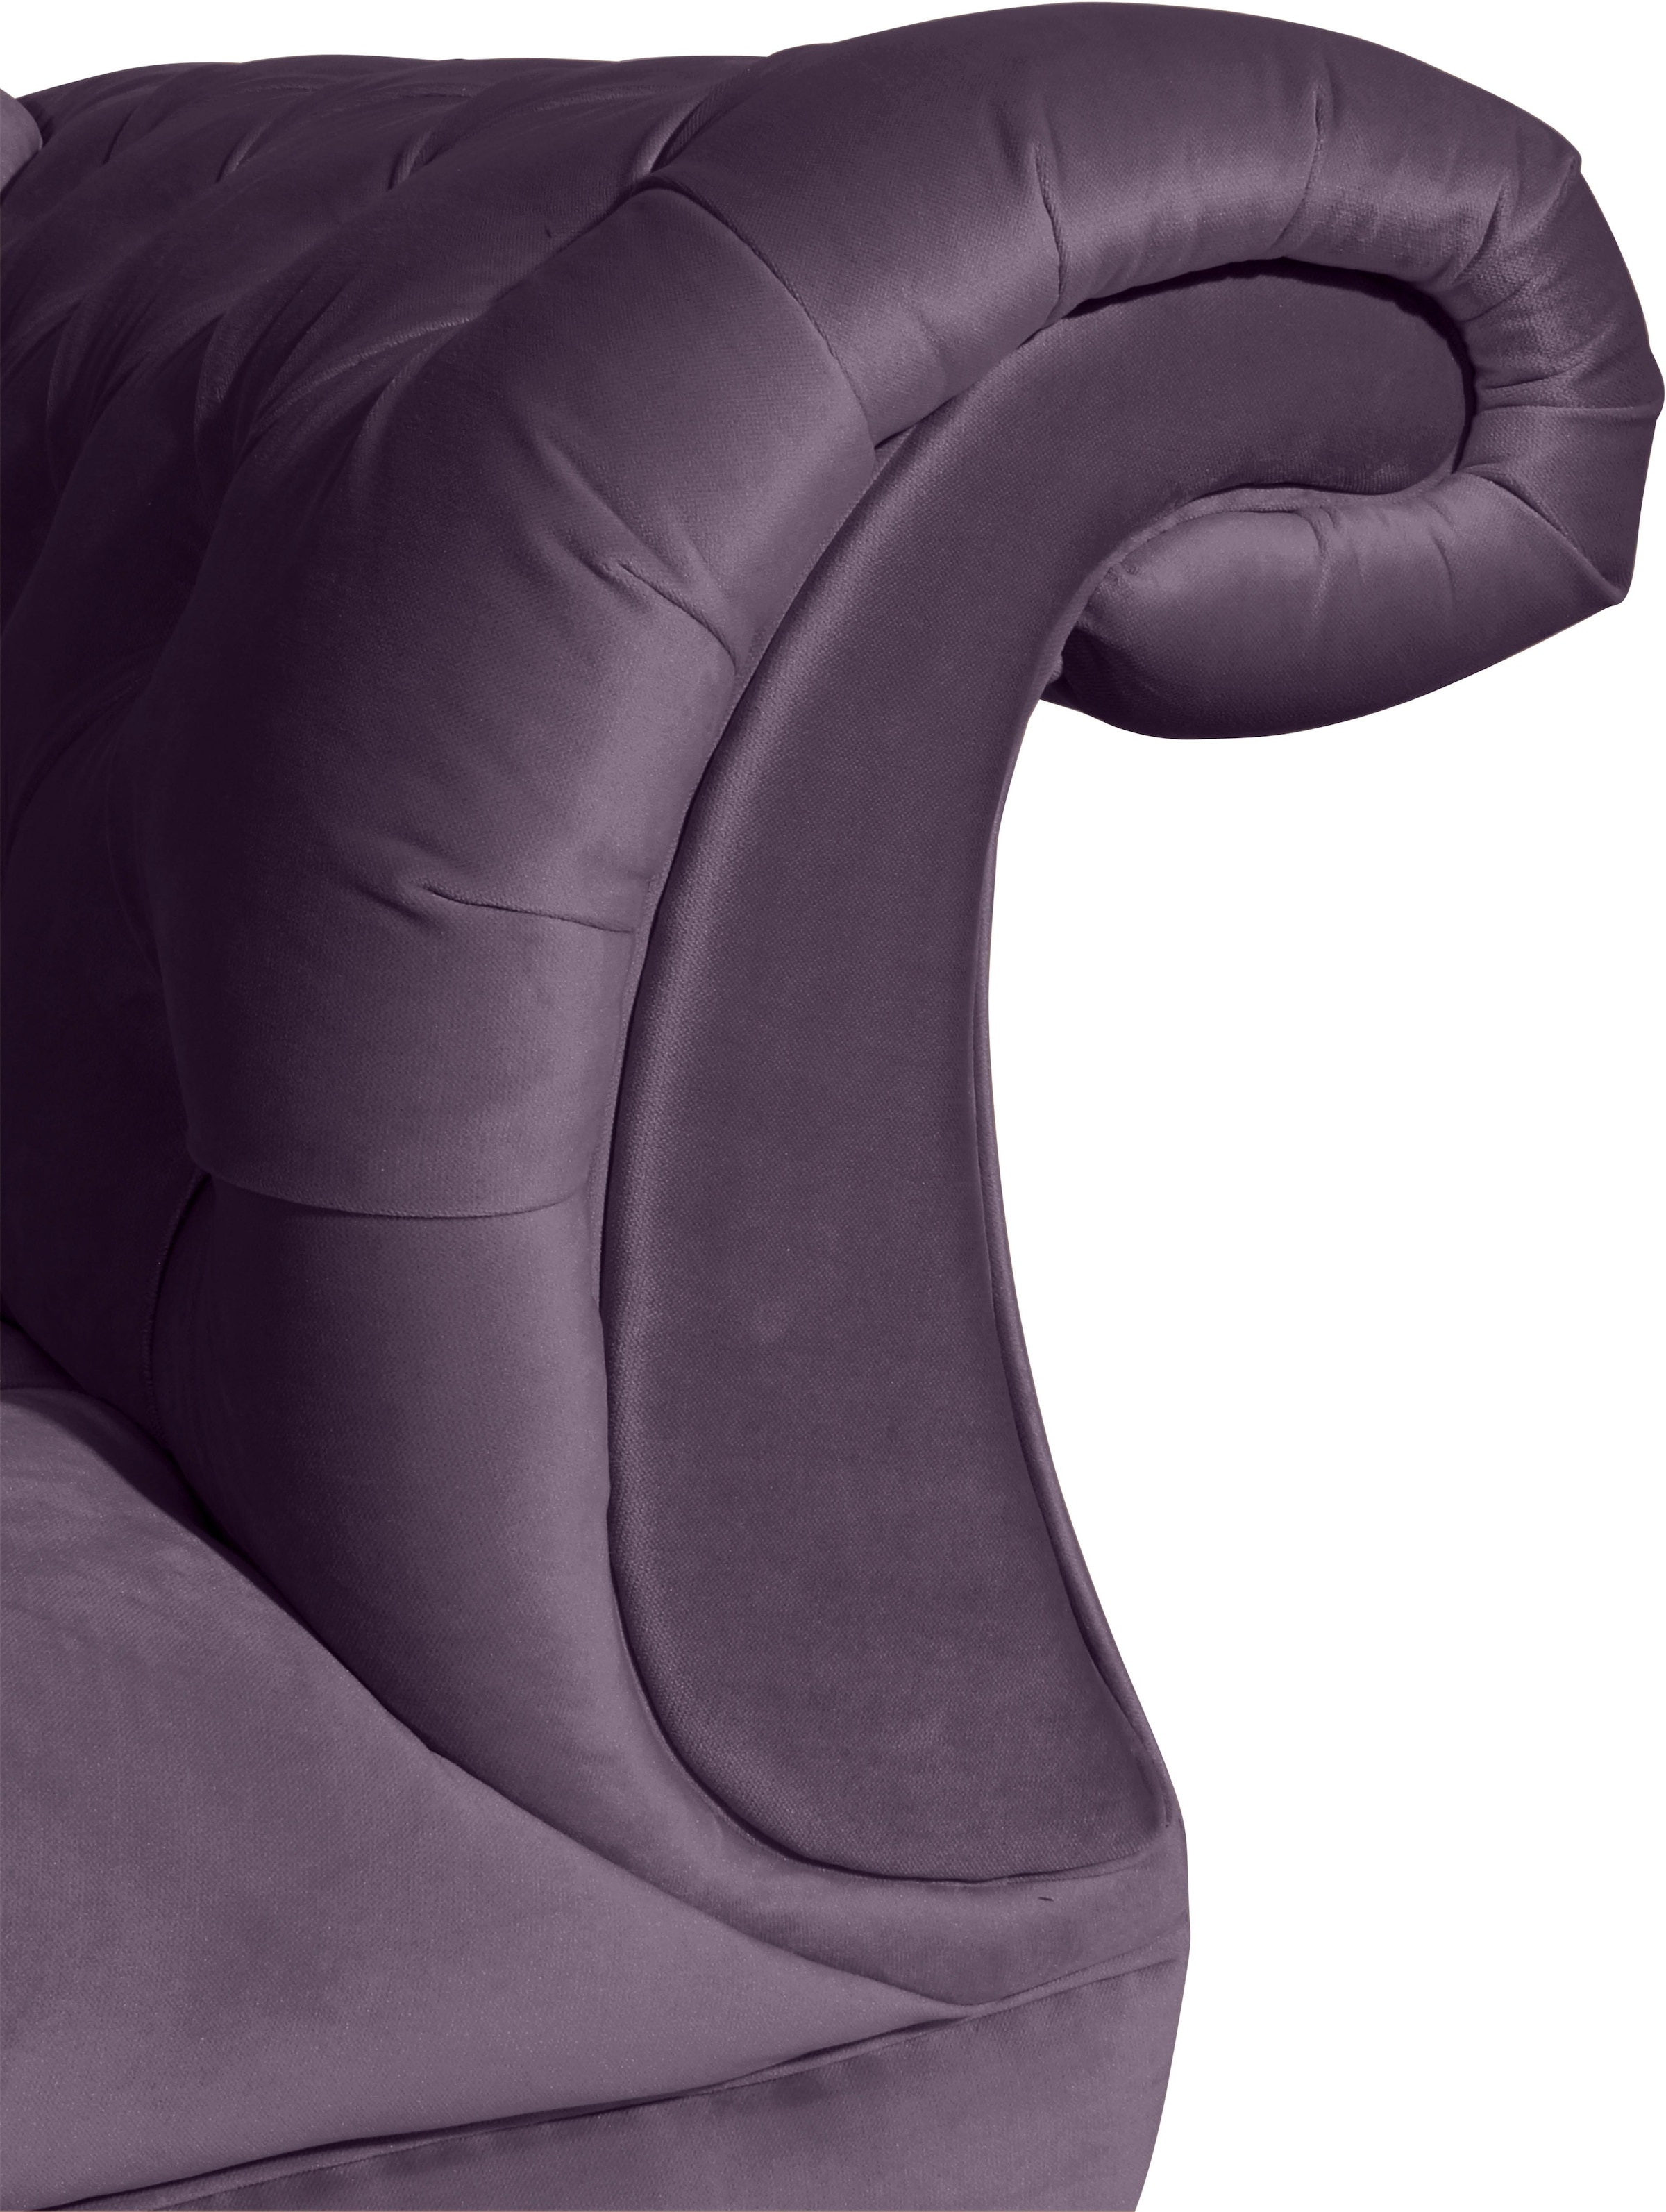 Max Winzer® Chesterfield-Sofa »Isabelle«, mit Knopfheftung & gedrechselten Füssen in Buche natur, Breite 200 cm